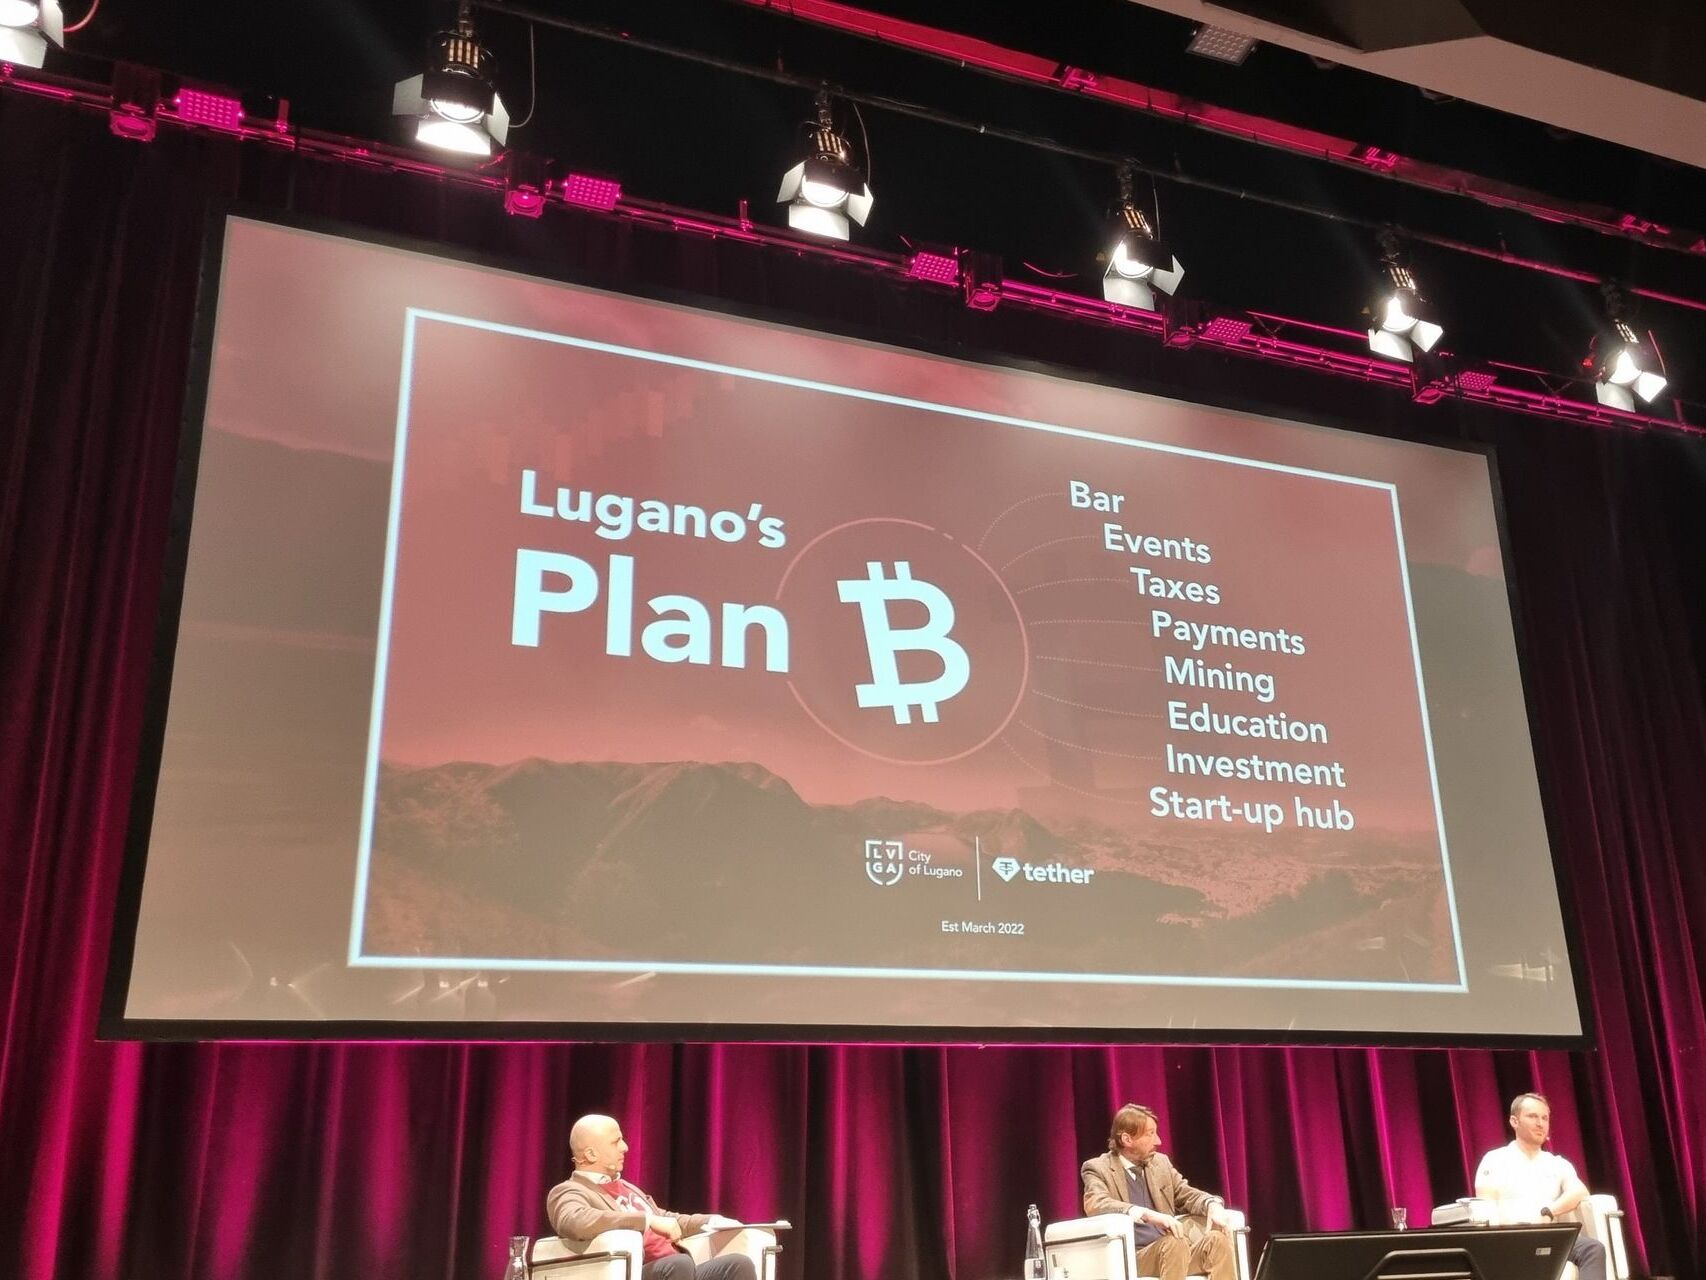 Prezantimi, më 3 mars 2022 në Qendrën e Kongresit, i bashkëpunimit midis qytetit të Lugano dhe Tether Operations Limited: "Plani B" synon të krijojë një qendër evropiane të ekselencës për adoptimin e kriptomonedhave dhe teknologjisë Blockchain.